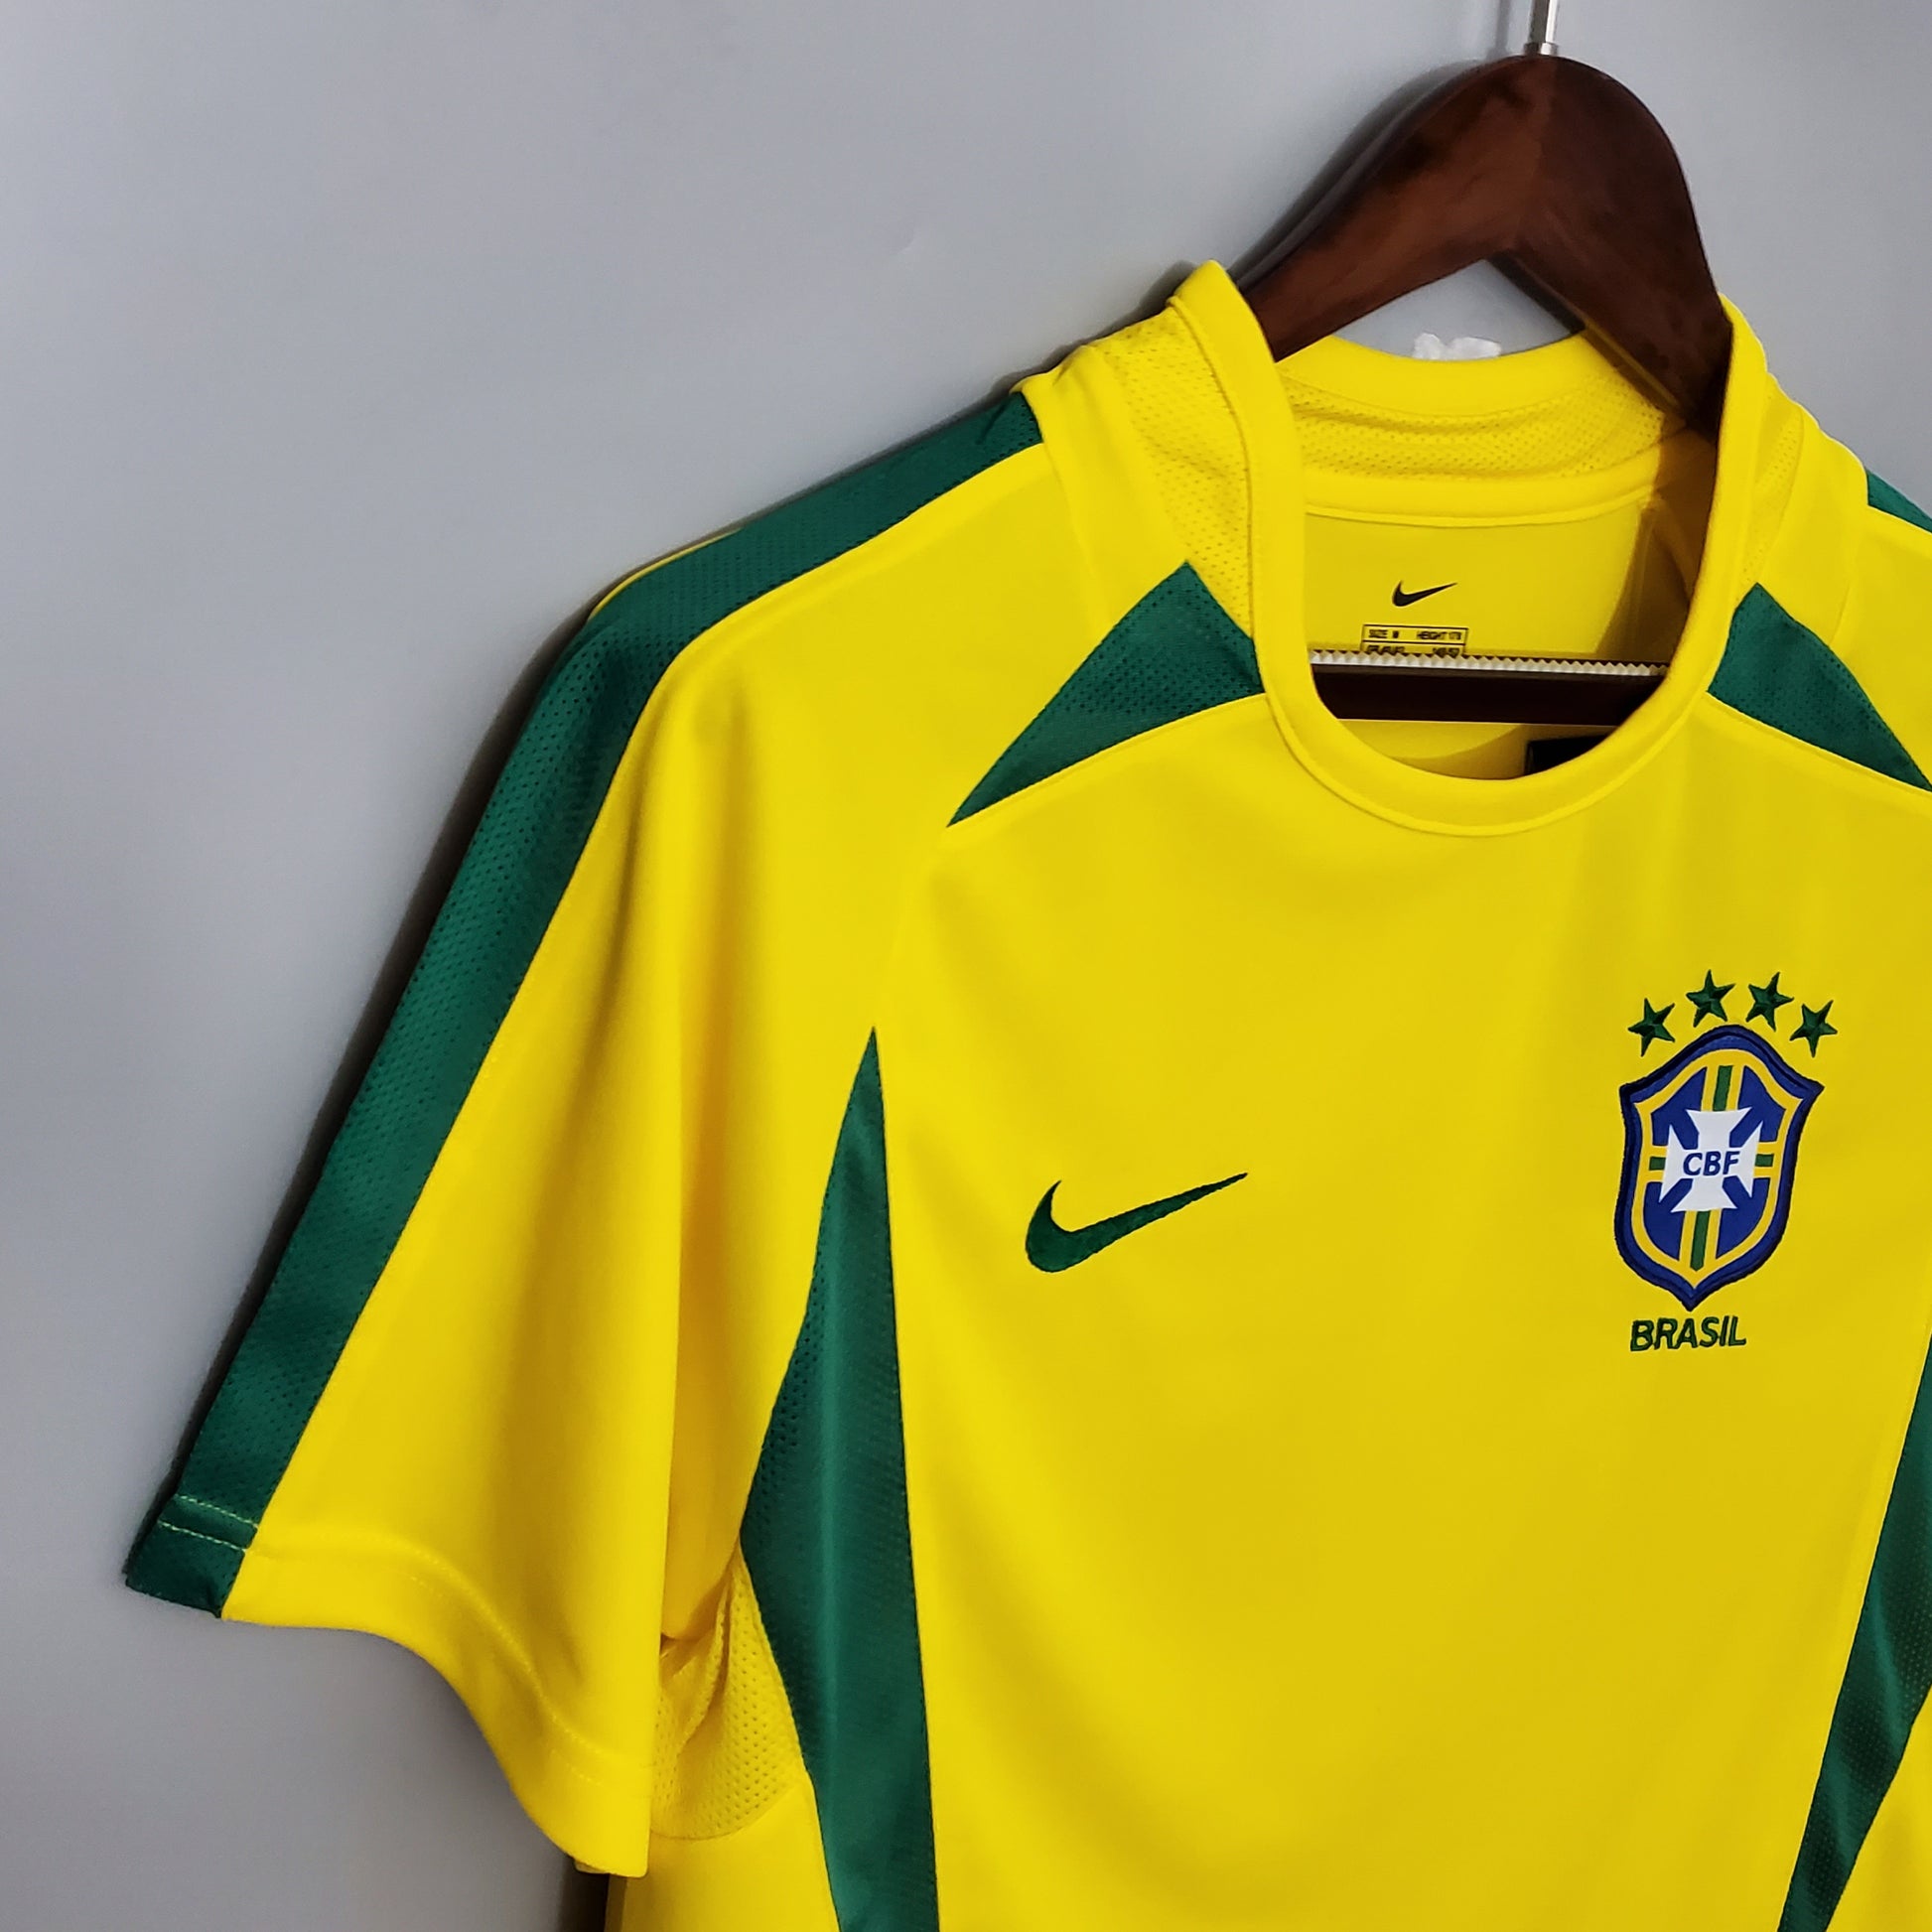 29 Brazil Football Team Jersey ideas  brazil football team, team jersey,  football team